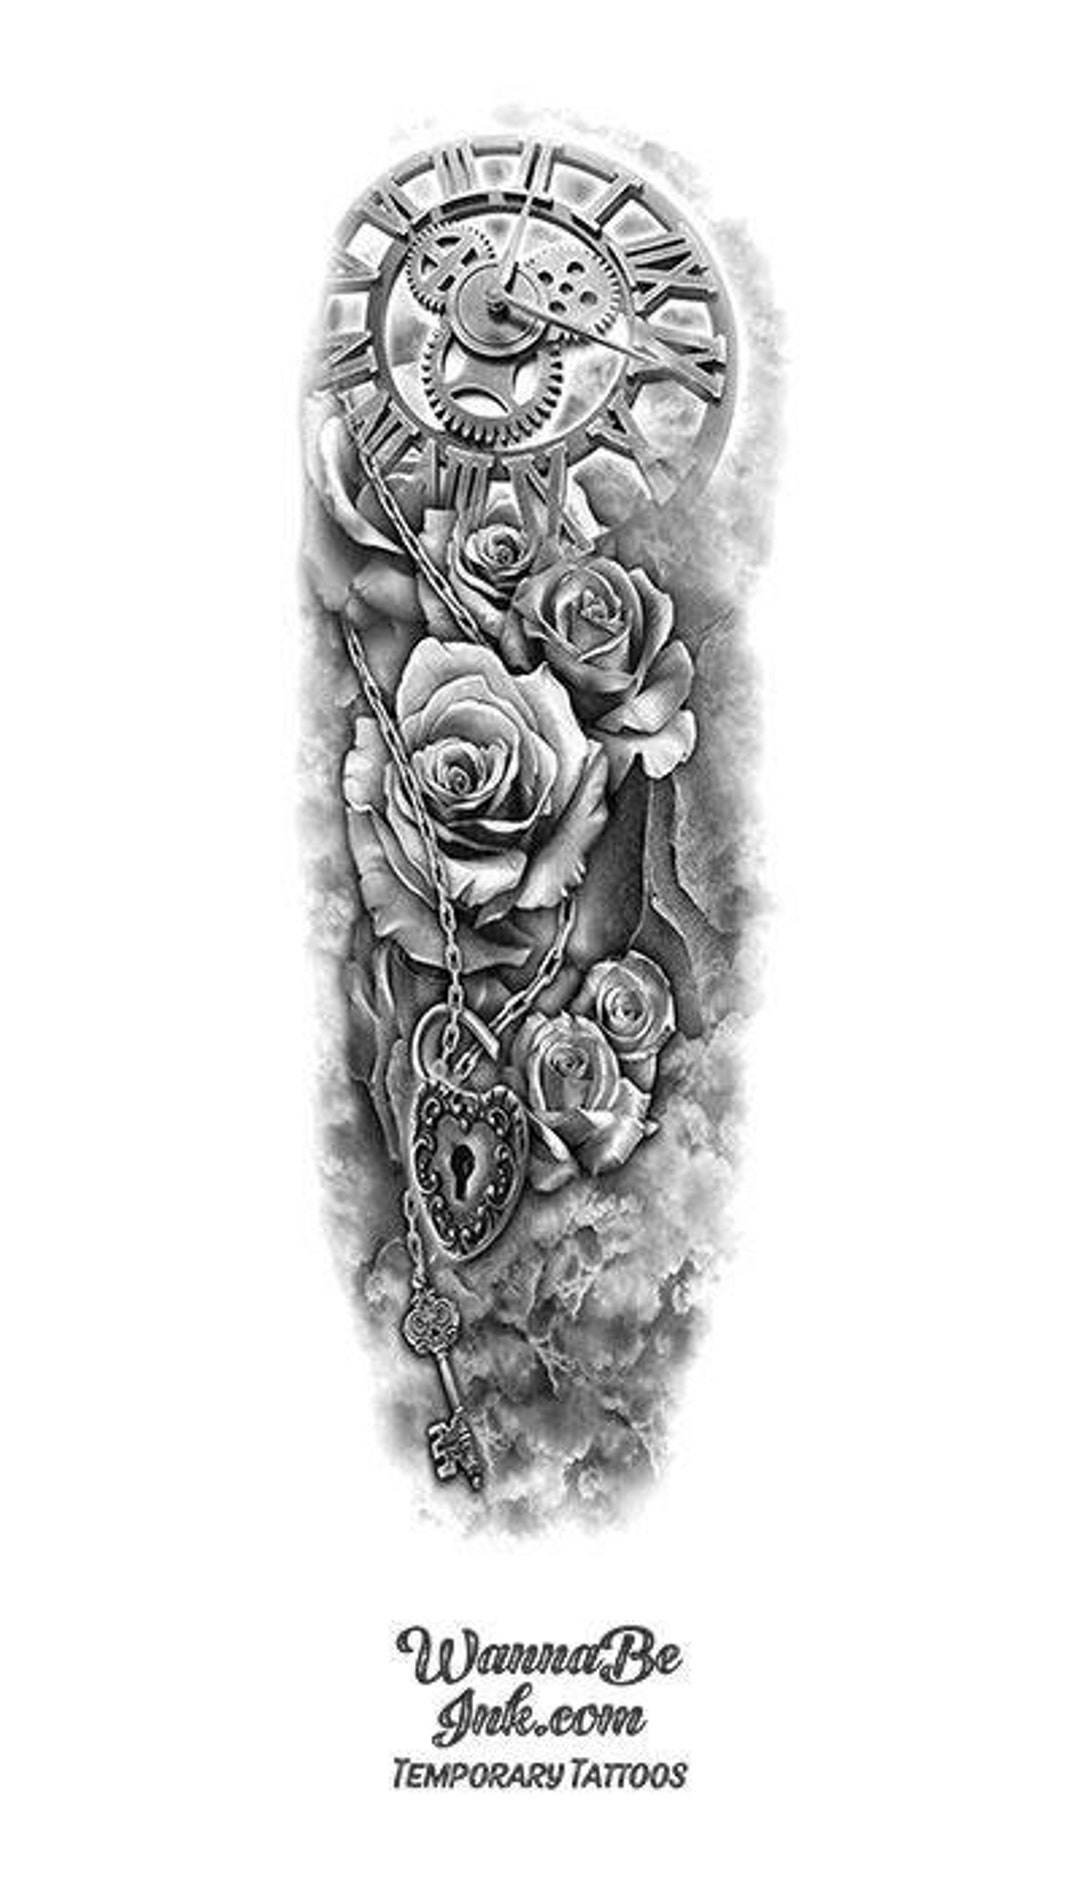 Clock Roses Lock and Skeleton Key Temporary Sleeve Tattoos - Etsy